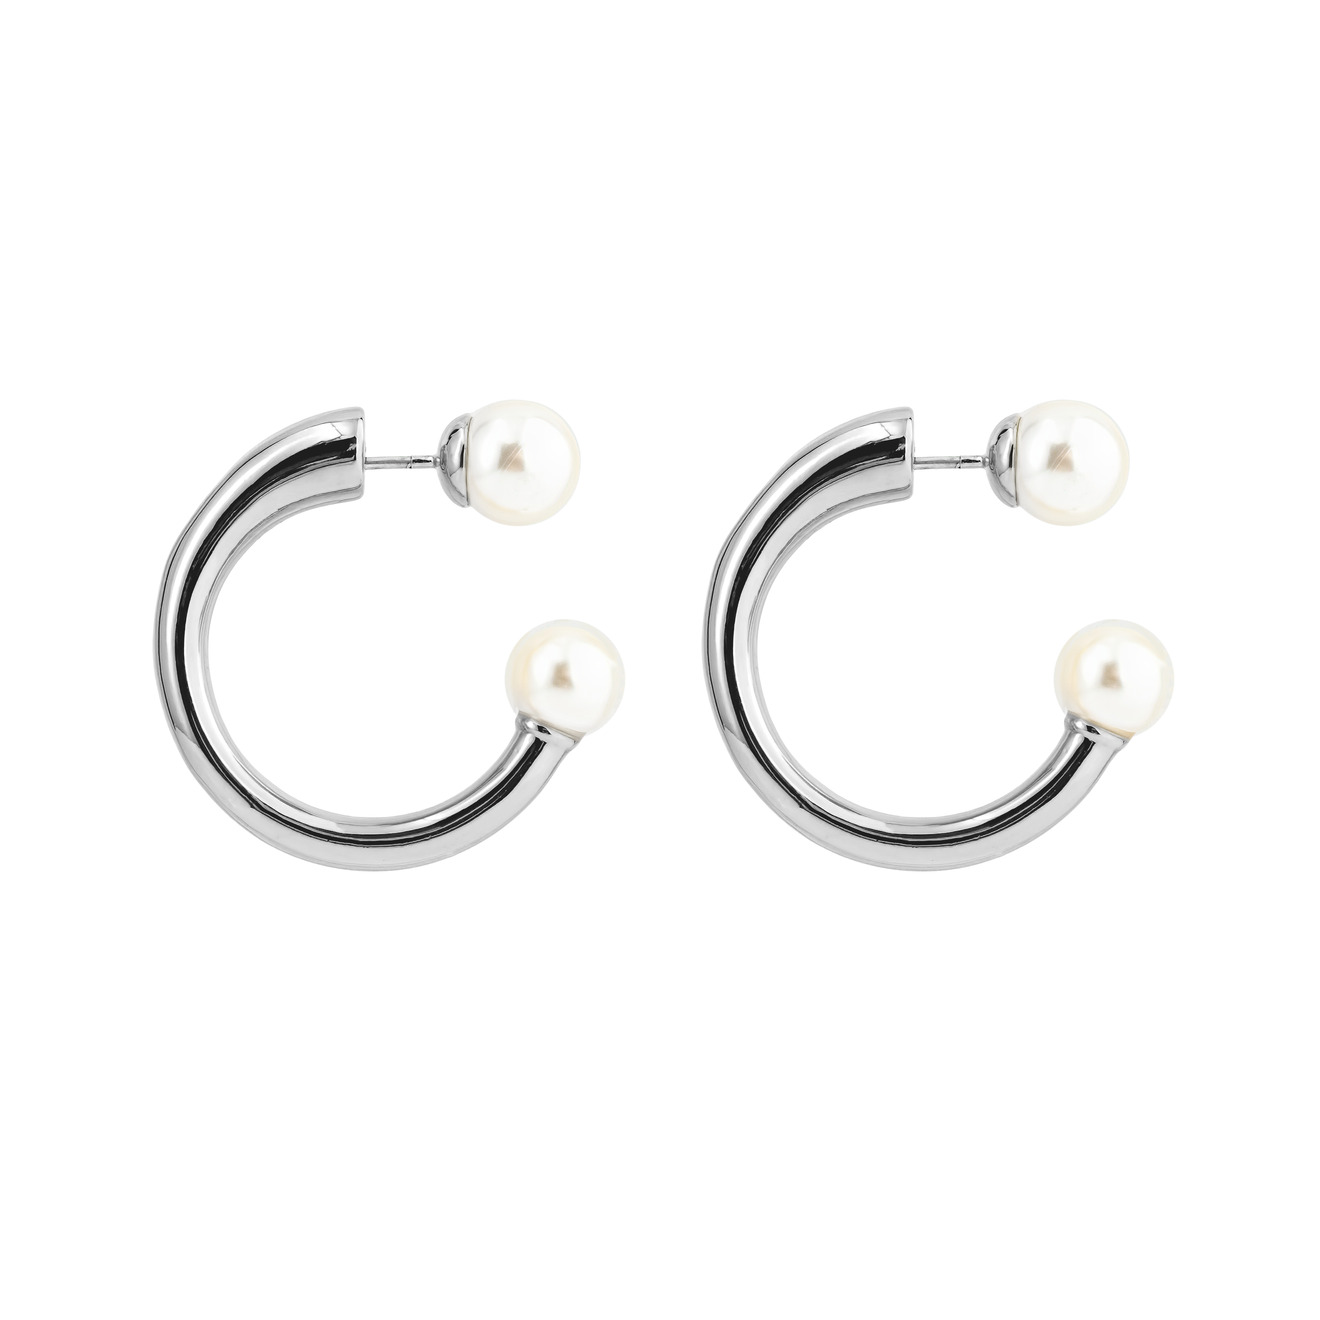 Aqua Серебристые круглые серьги-джекеты с белыми бусинами цена и фото